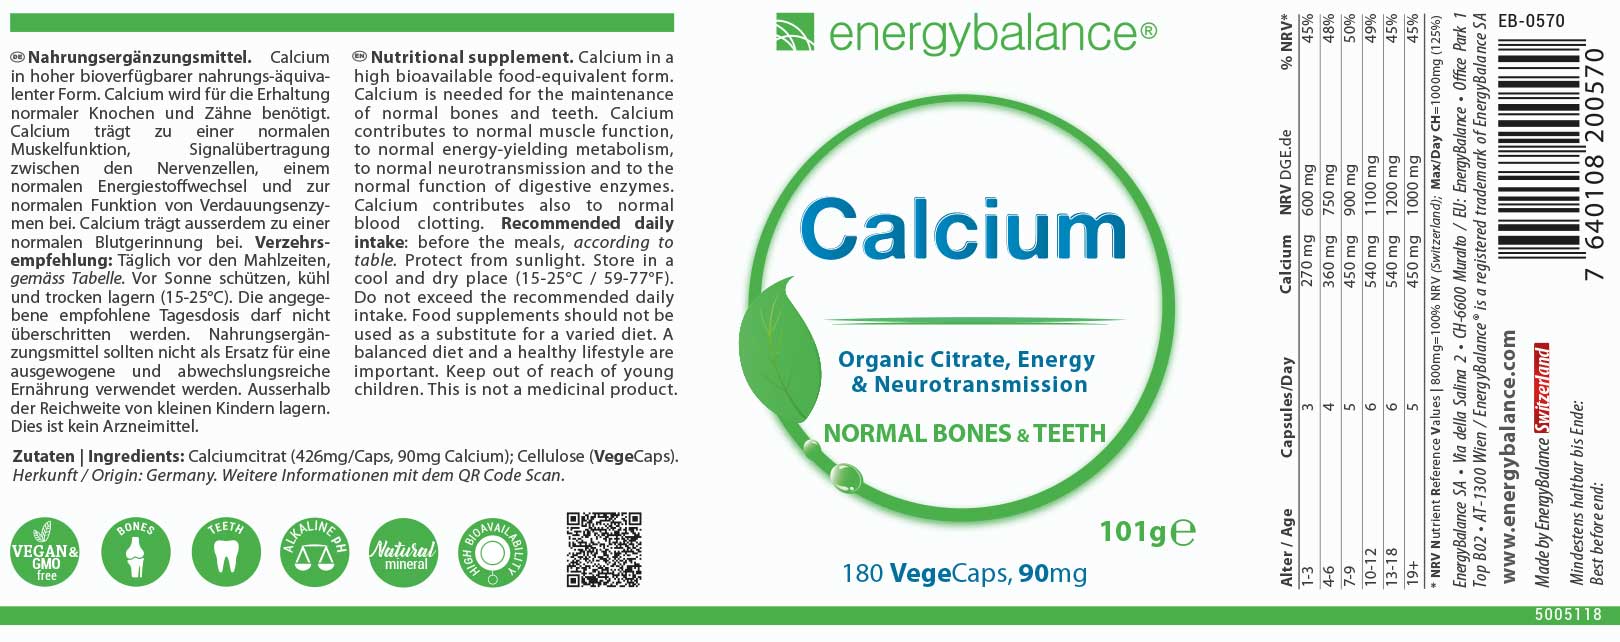 Calcium Etikett von Energybalance